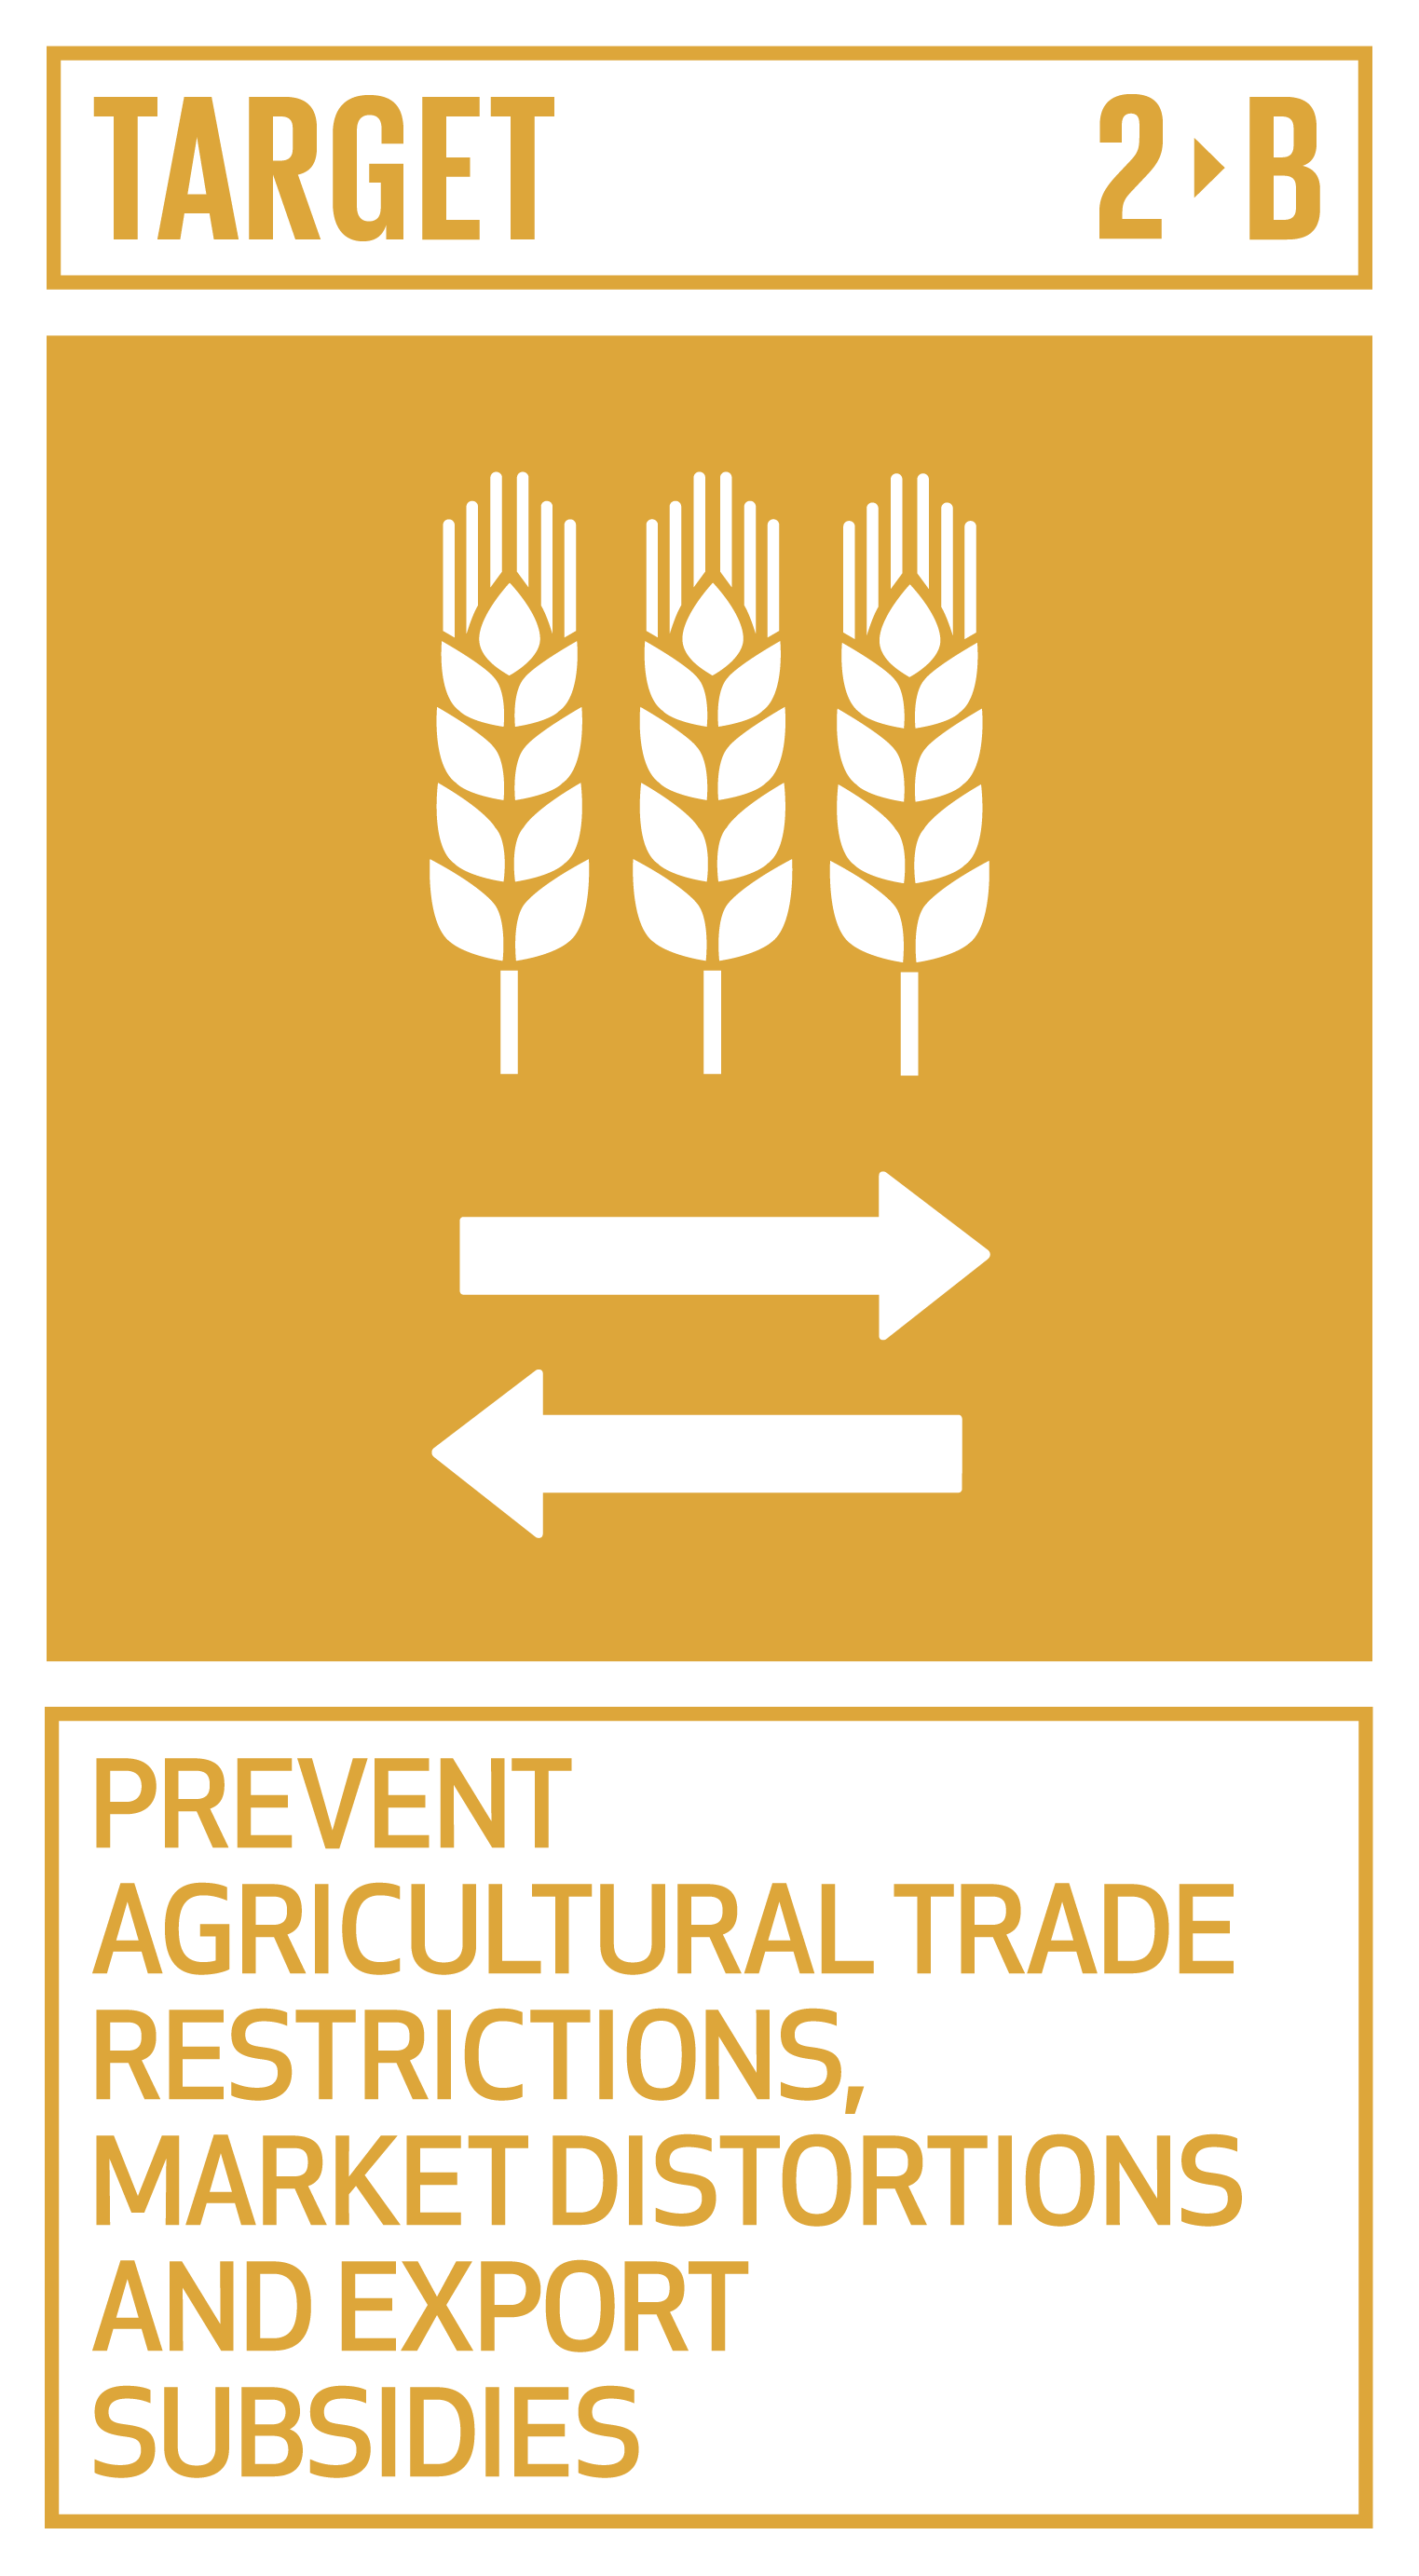 Goal,target,永續發展目標SDGs2目標2.B防止農業貿易限制、市場扭曲和出口補貼